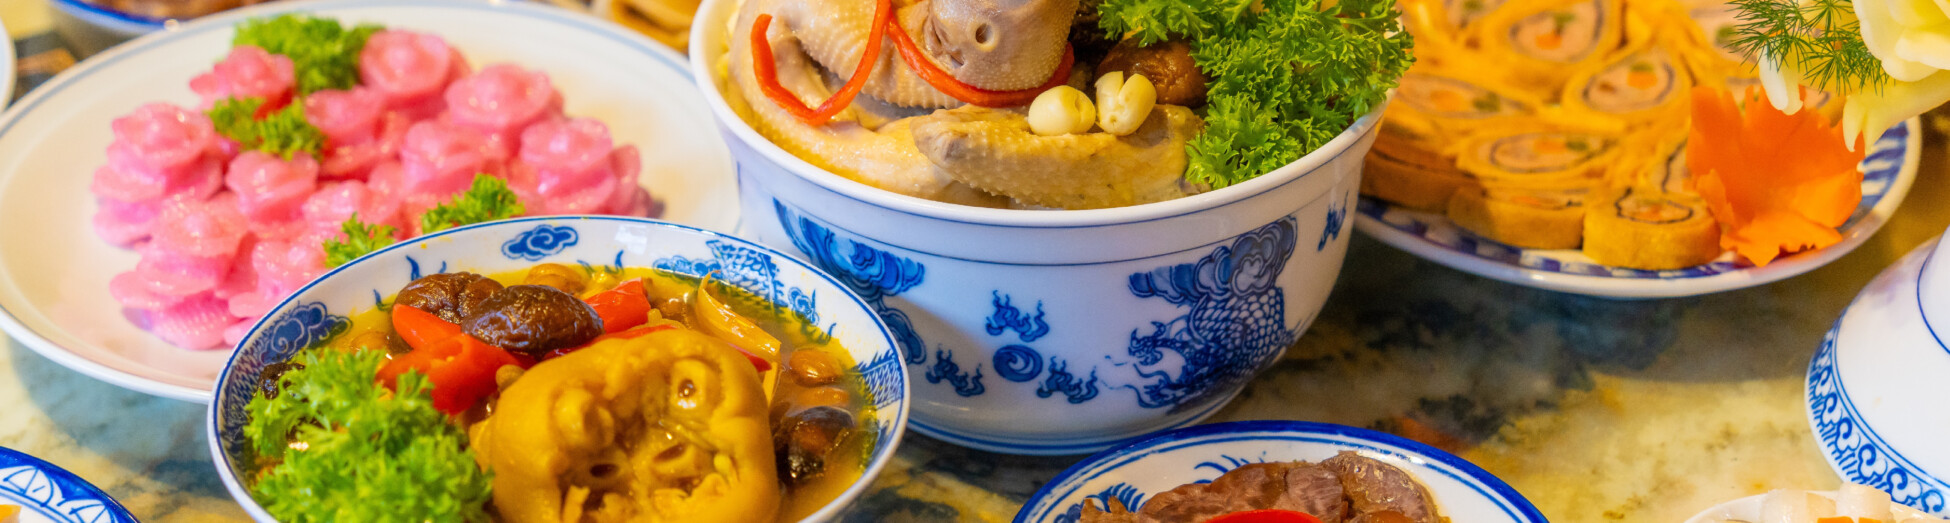 Ẩm thực truyền thống Việt Nam